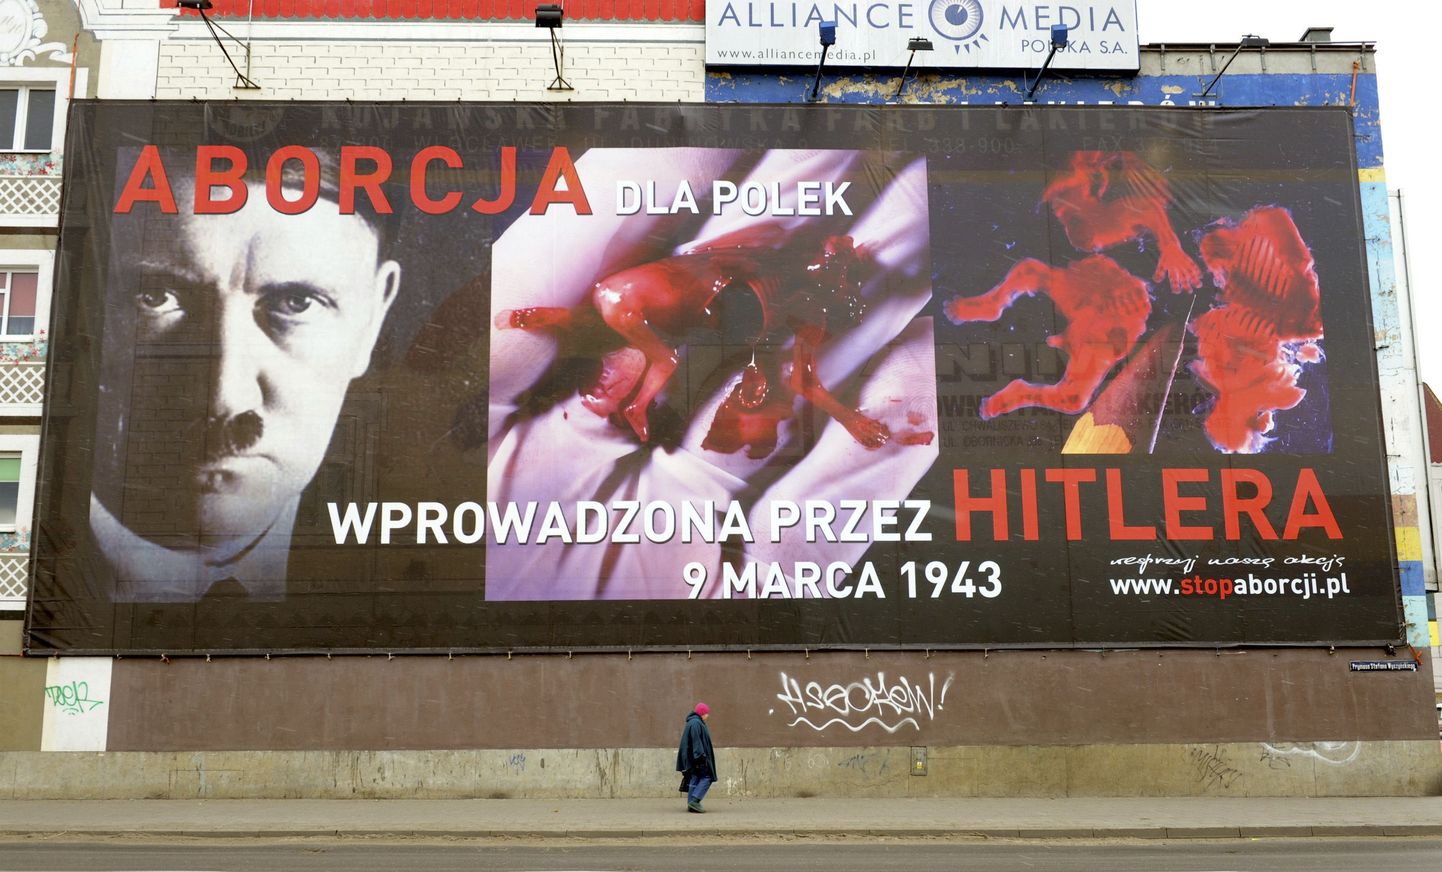 Кампания против абортов в Польше, в ходе которой сообщалось, что первым аборты в стране узаконил Гитлер.